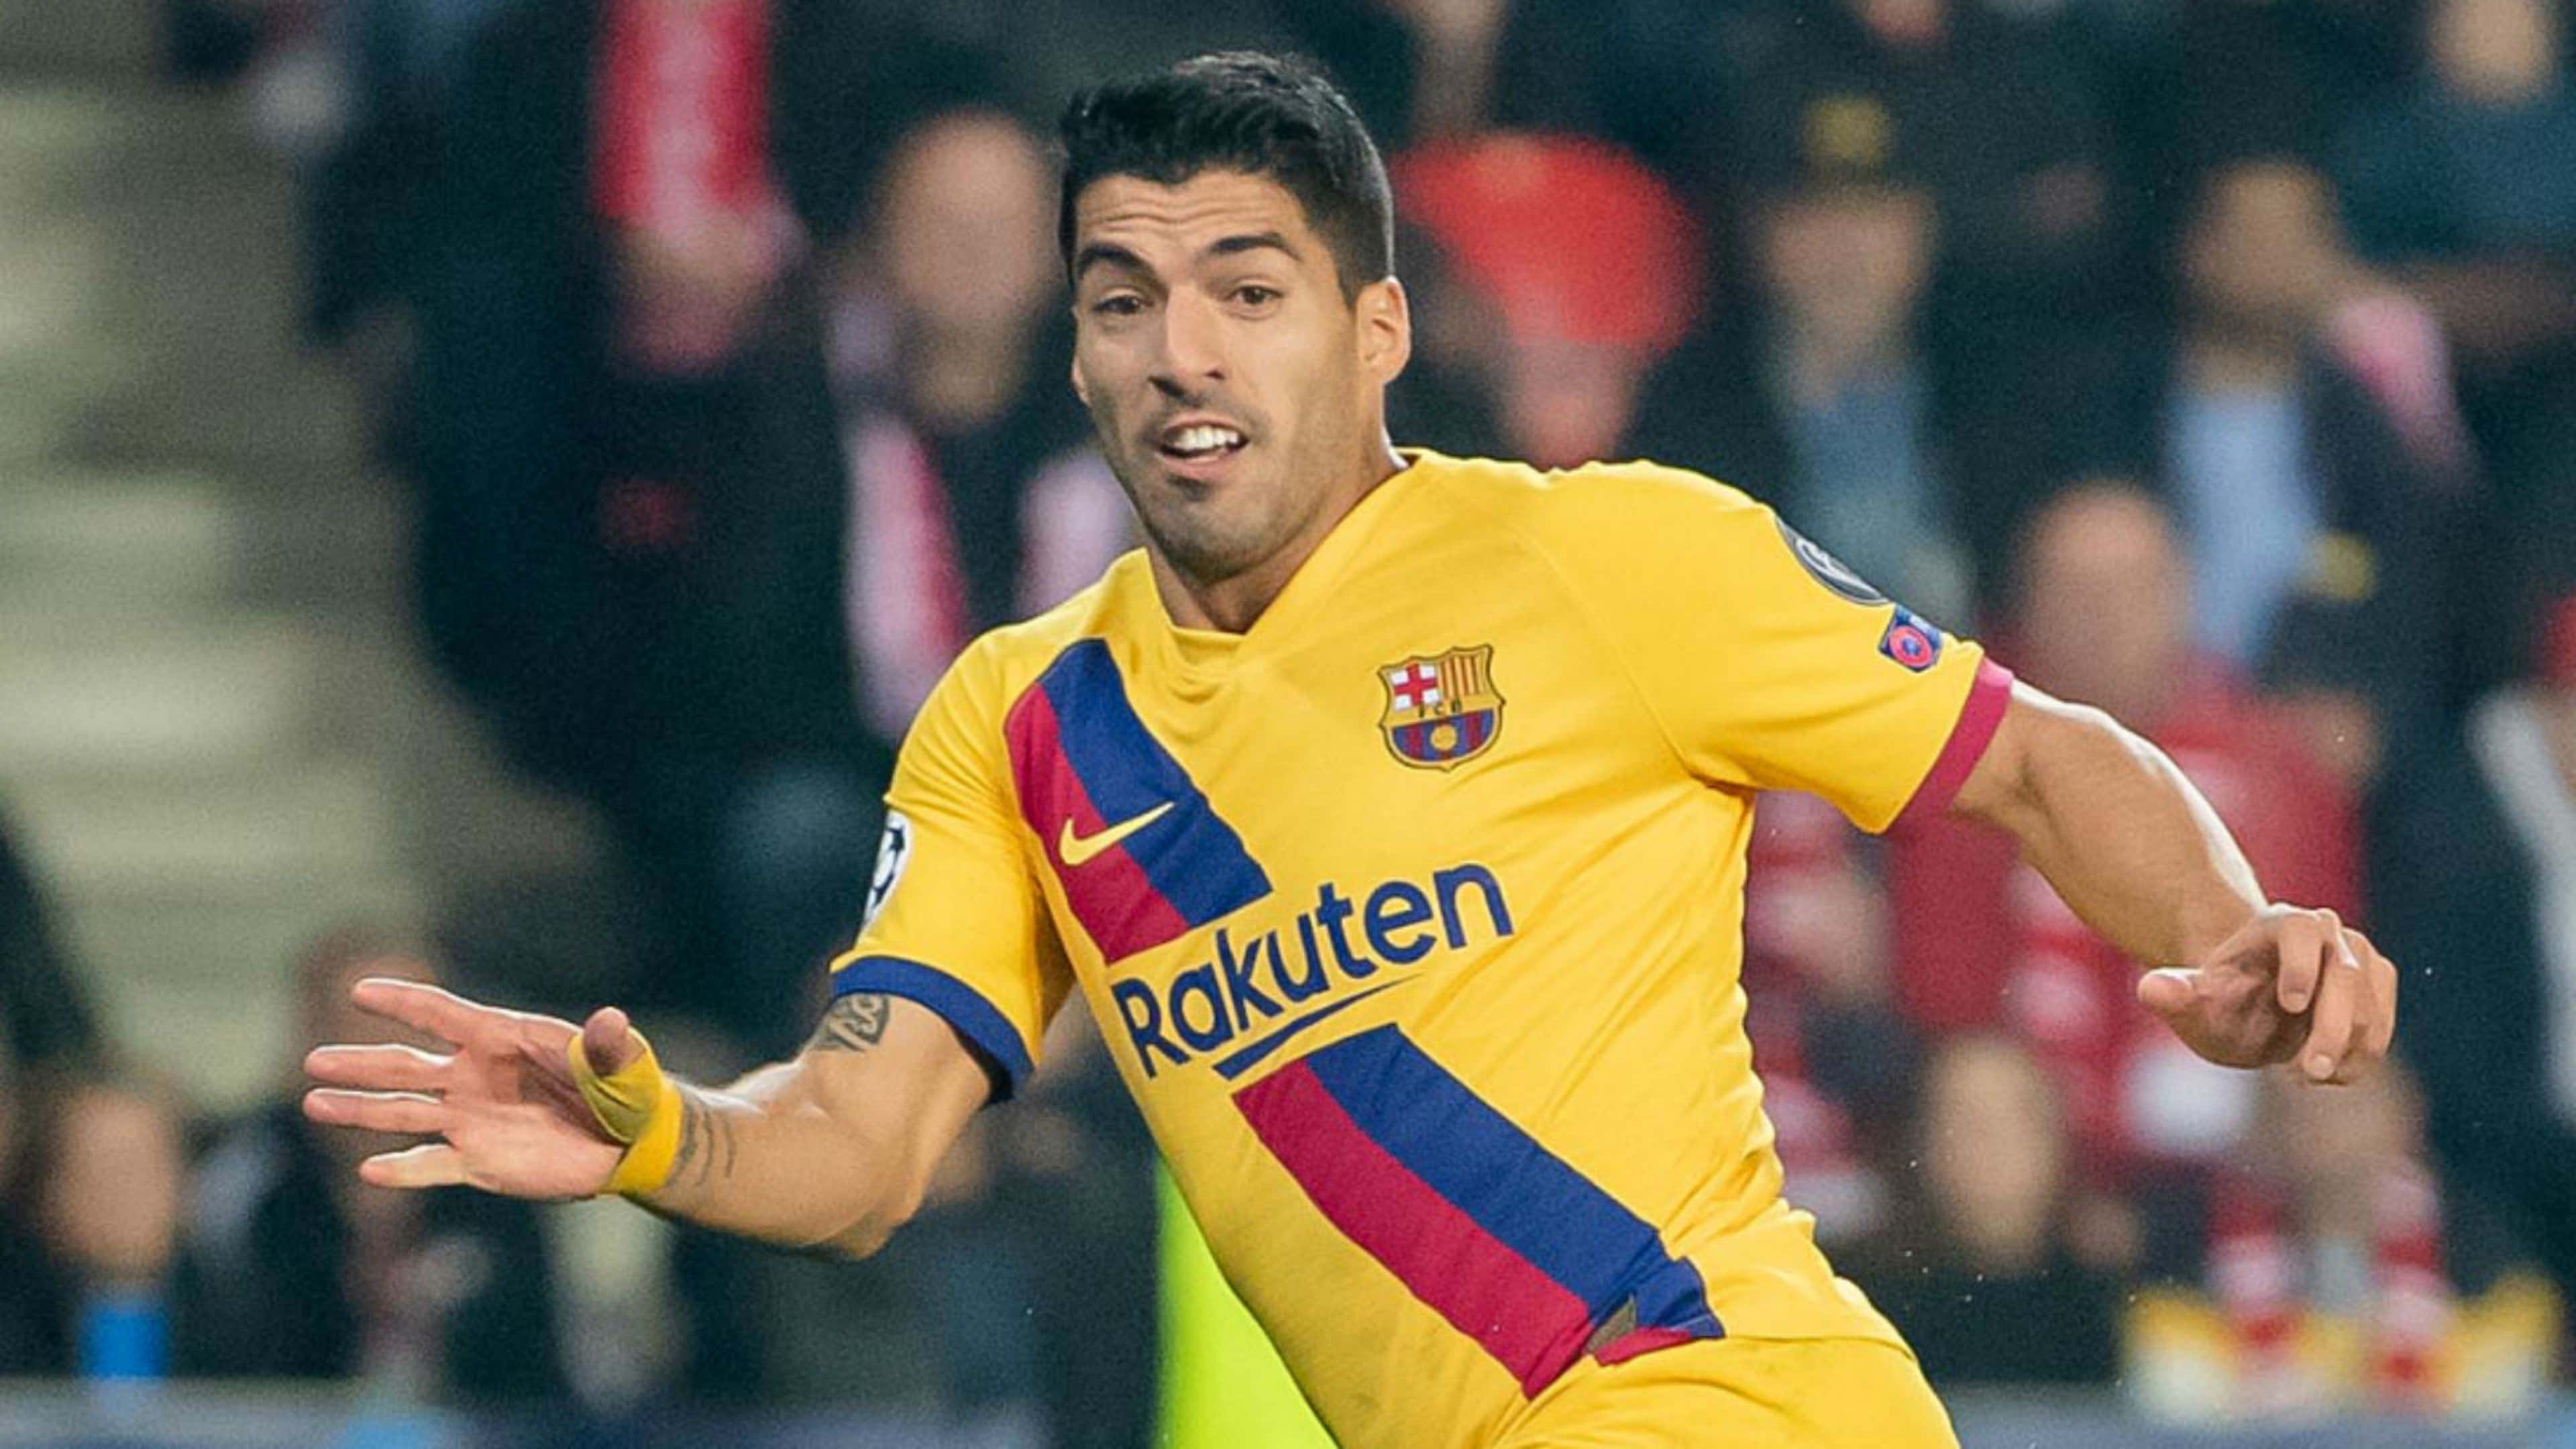 Suárez cravou o gol dele no clássico - Doentes por Futebol